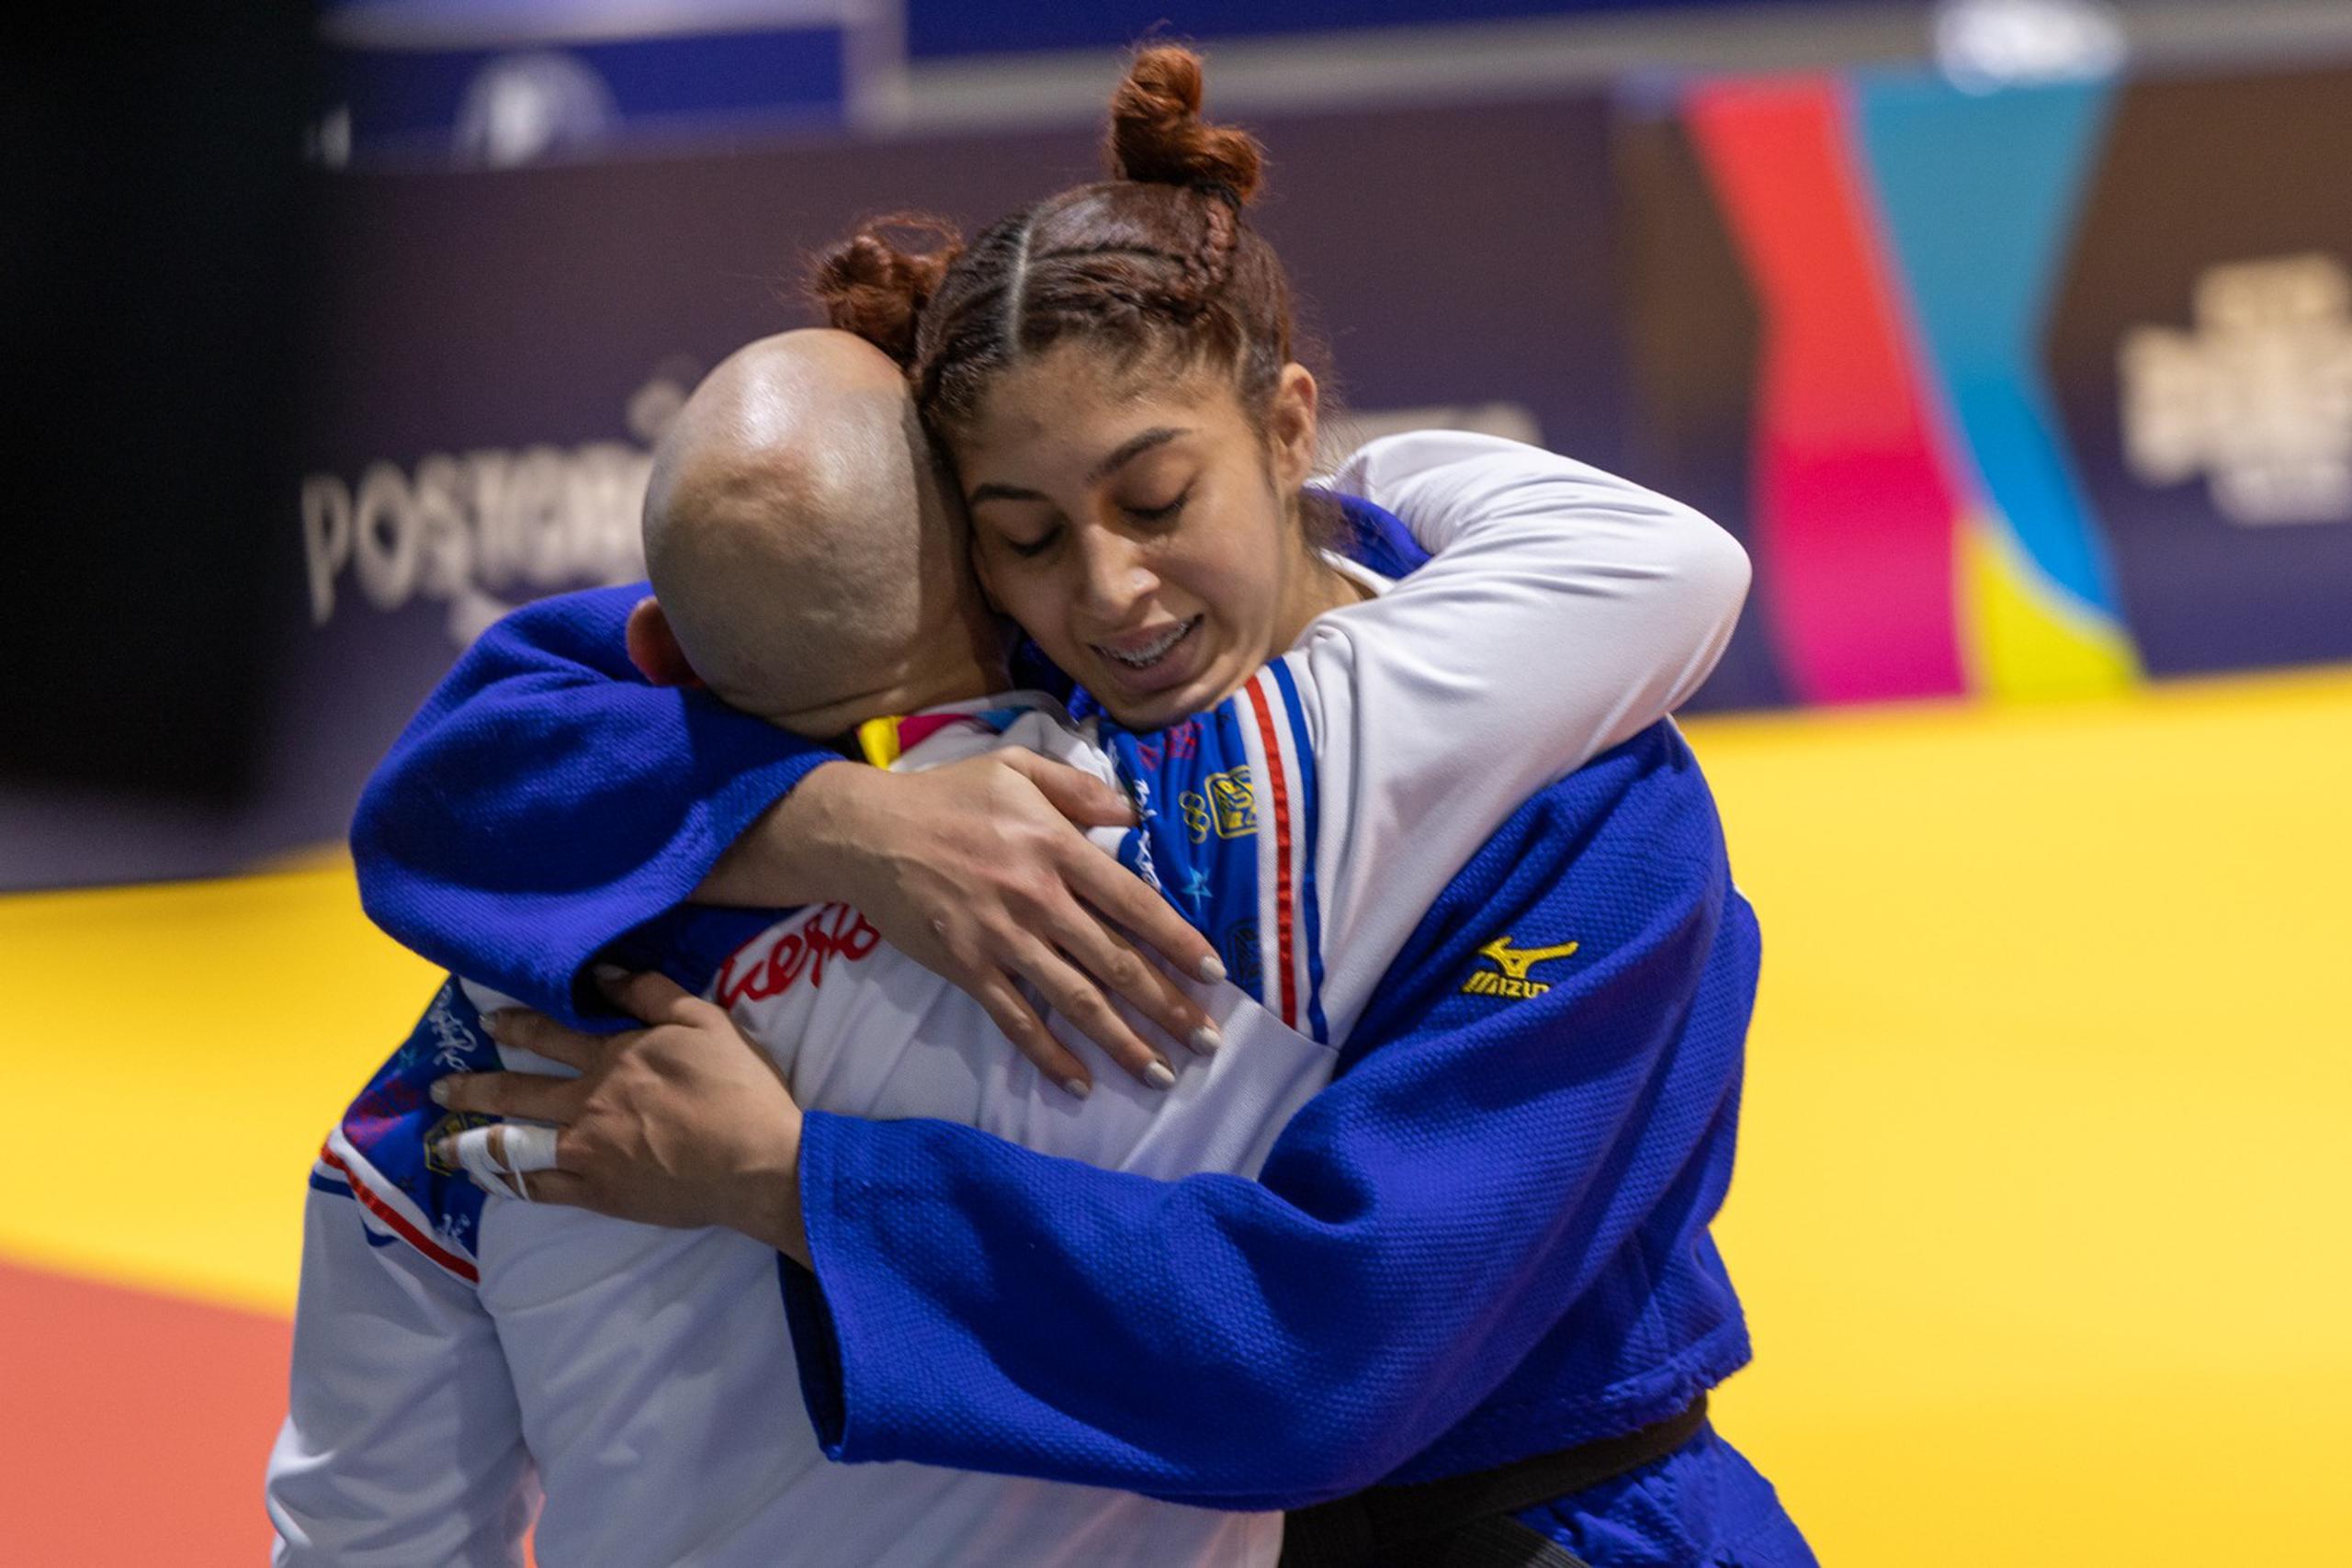 La judoca viequense Sairy Colón es felicitada por el entrenador Arturo Galloza  tras conquistar bronce en la división de -70 kilos en los Juegos Panamericanos Junior de Cali-Valle 2021.